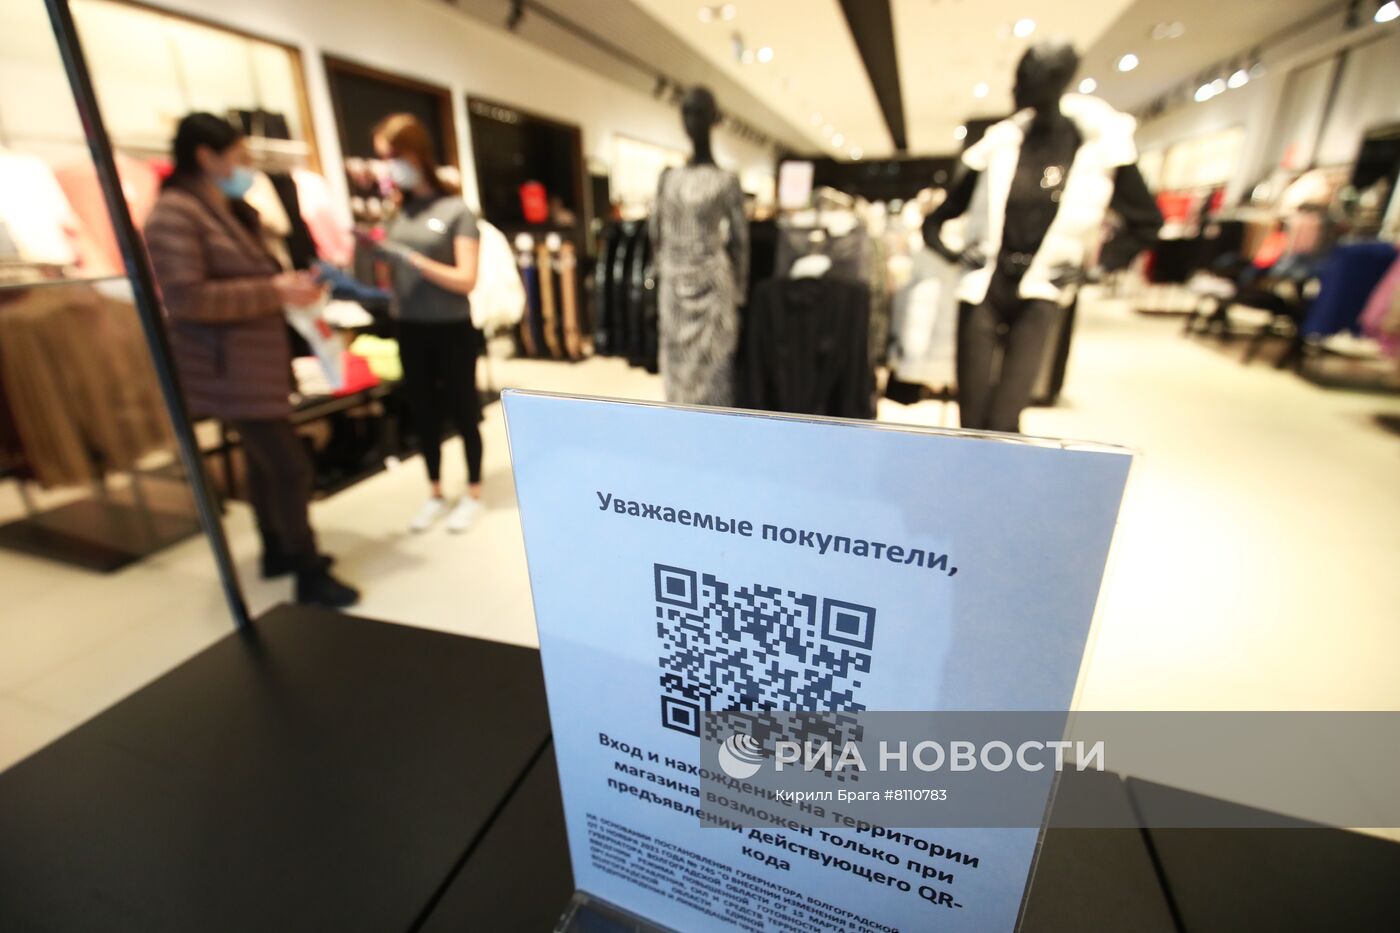 Соблюдение мер против COVID-19 в торговом центре "Акварель" в Волгограде